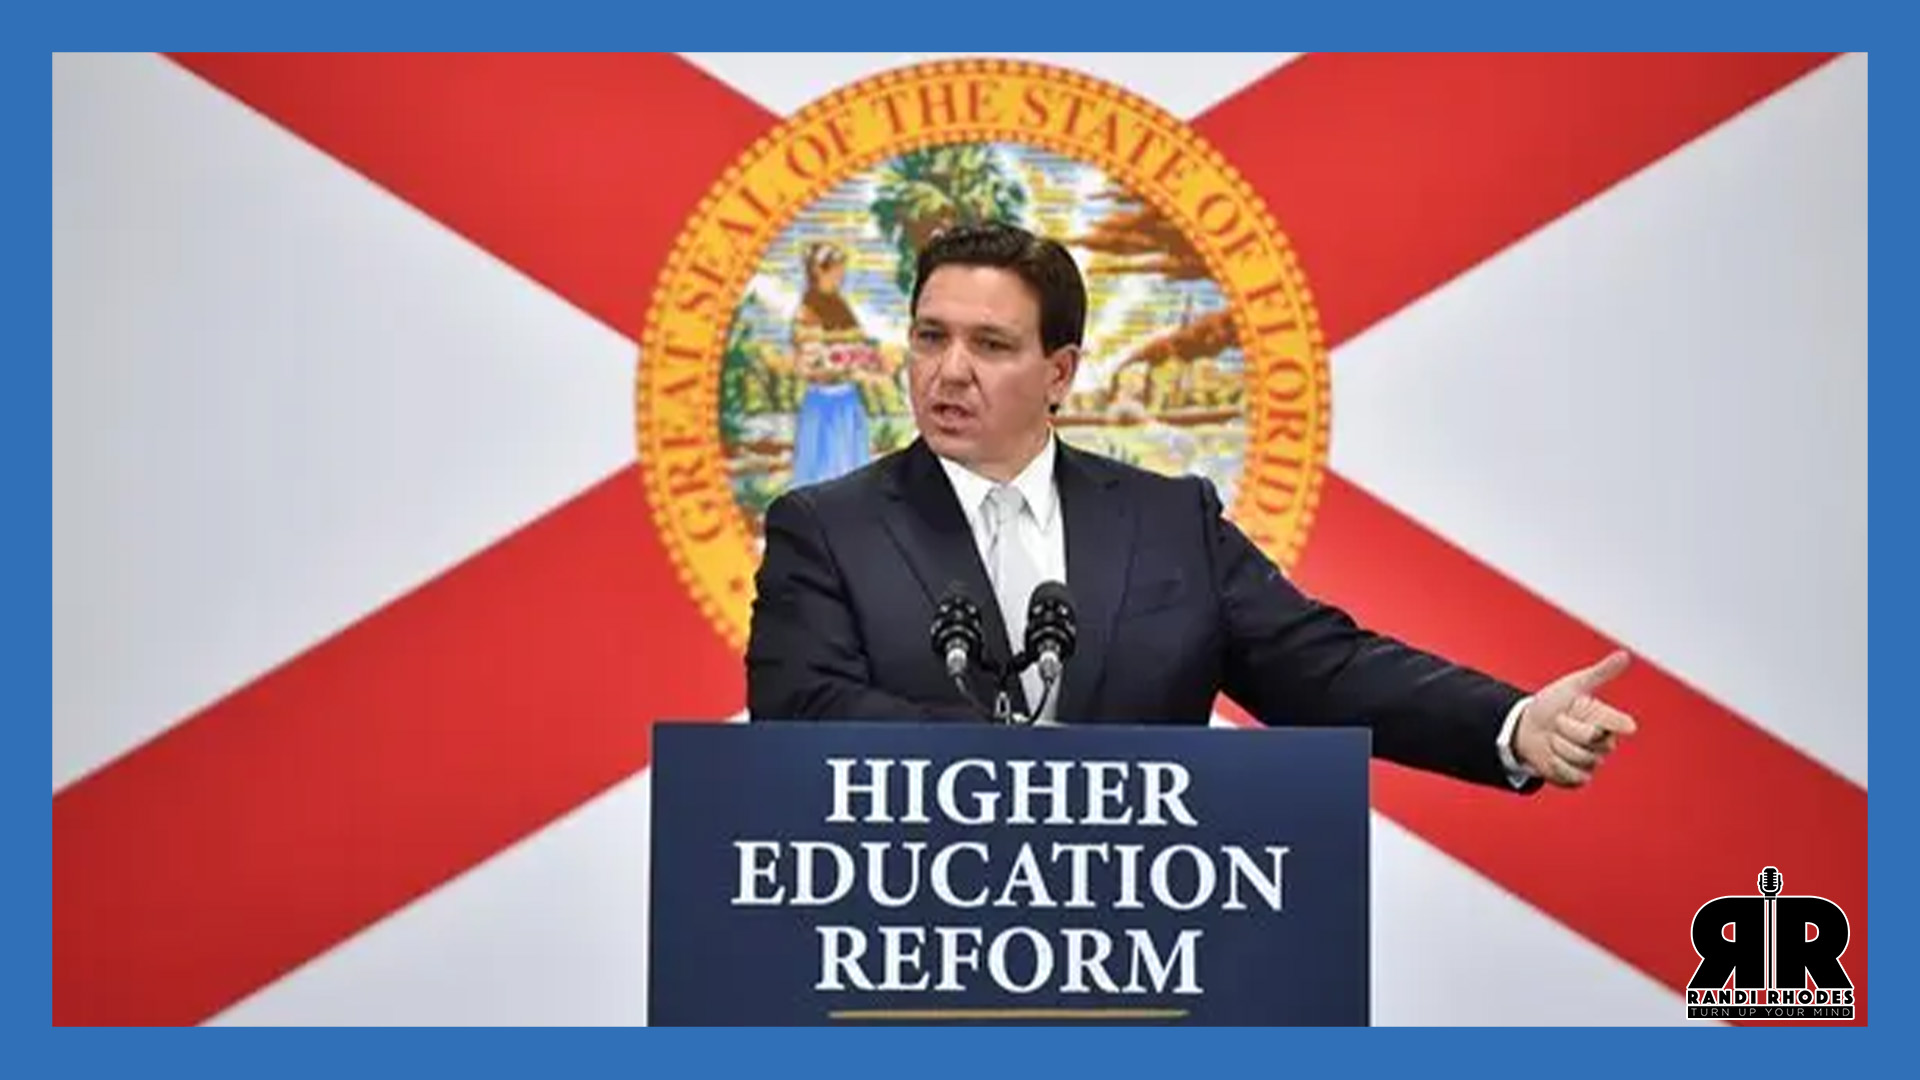 Ron DeSantis' Version of Higher Education Reform